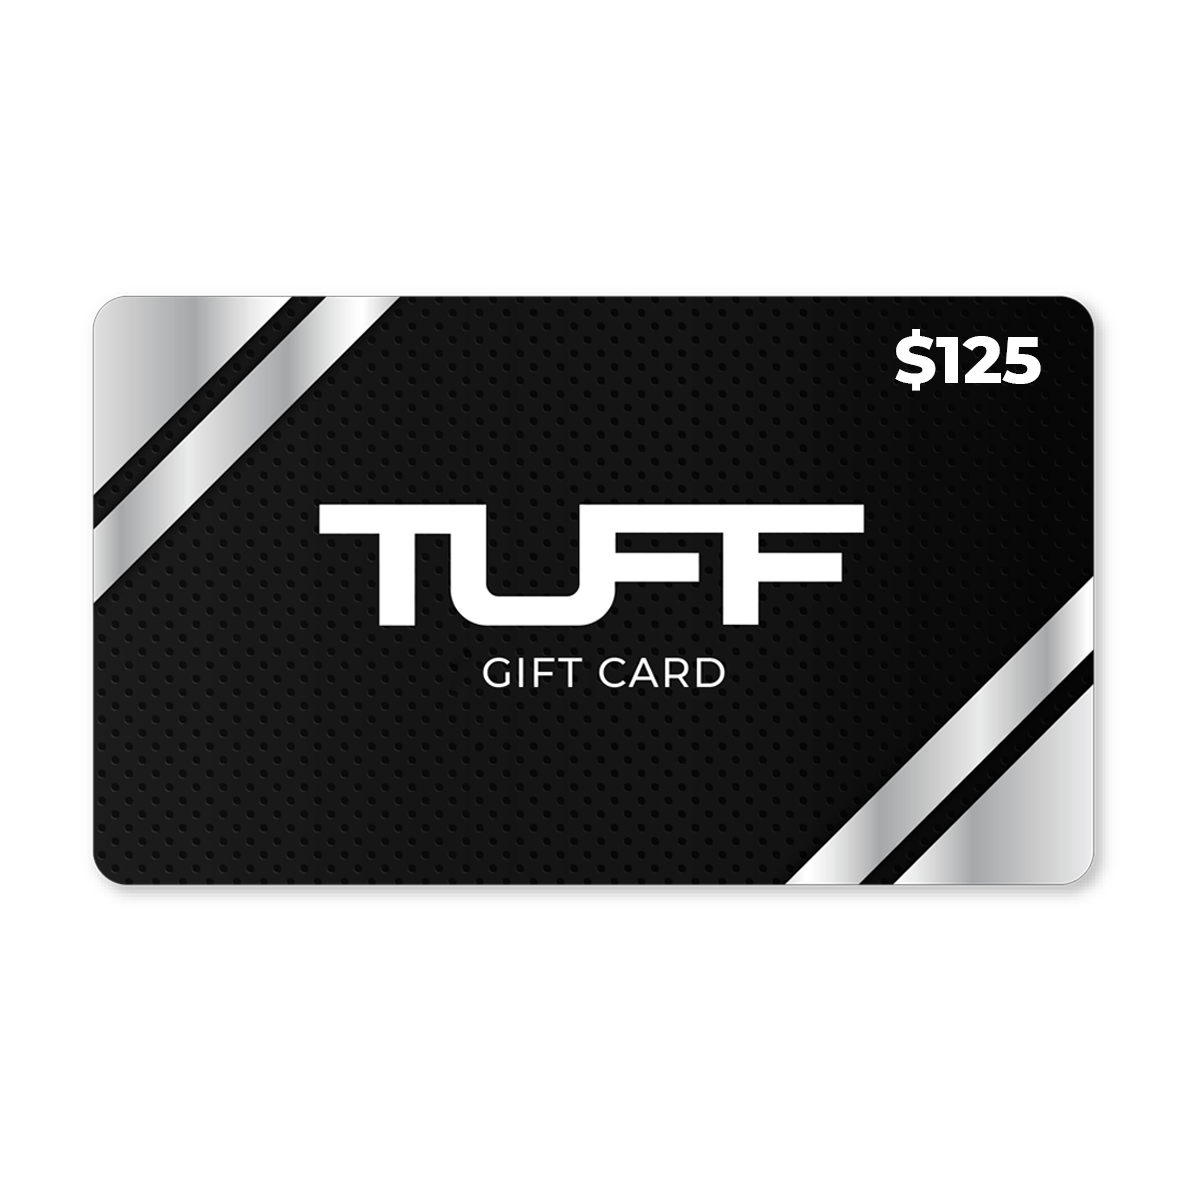 TuffWraps Gift Card $125.00 TUFF Gift Card